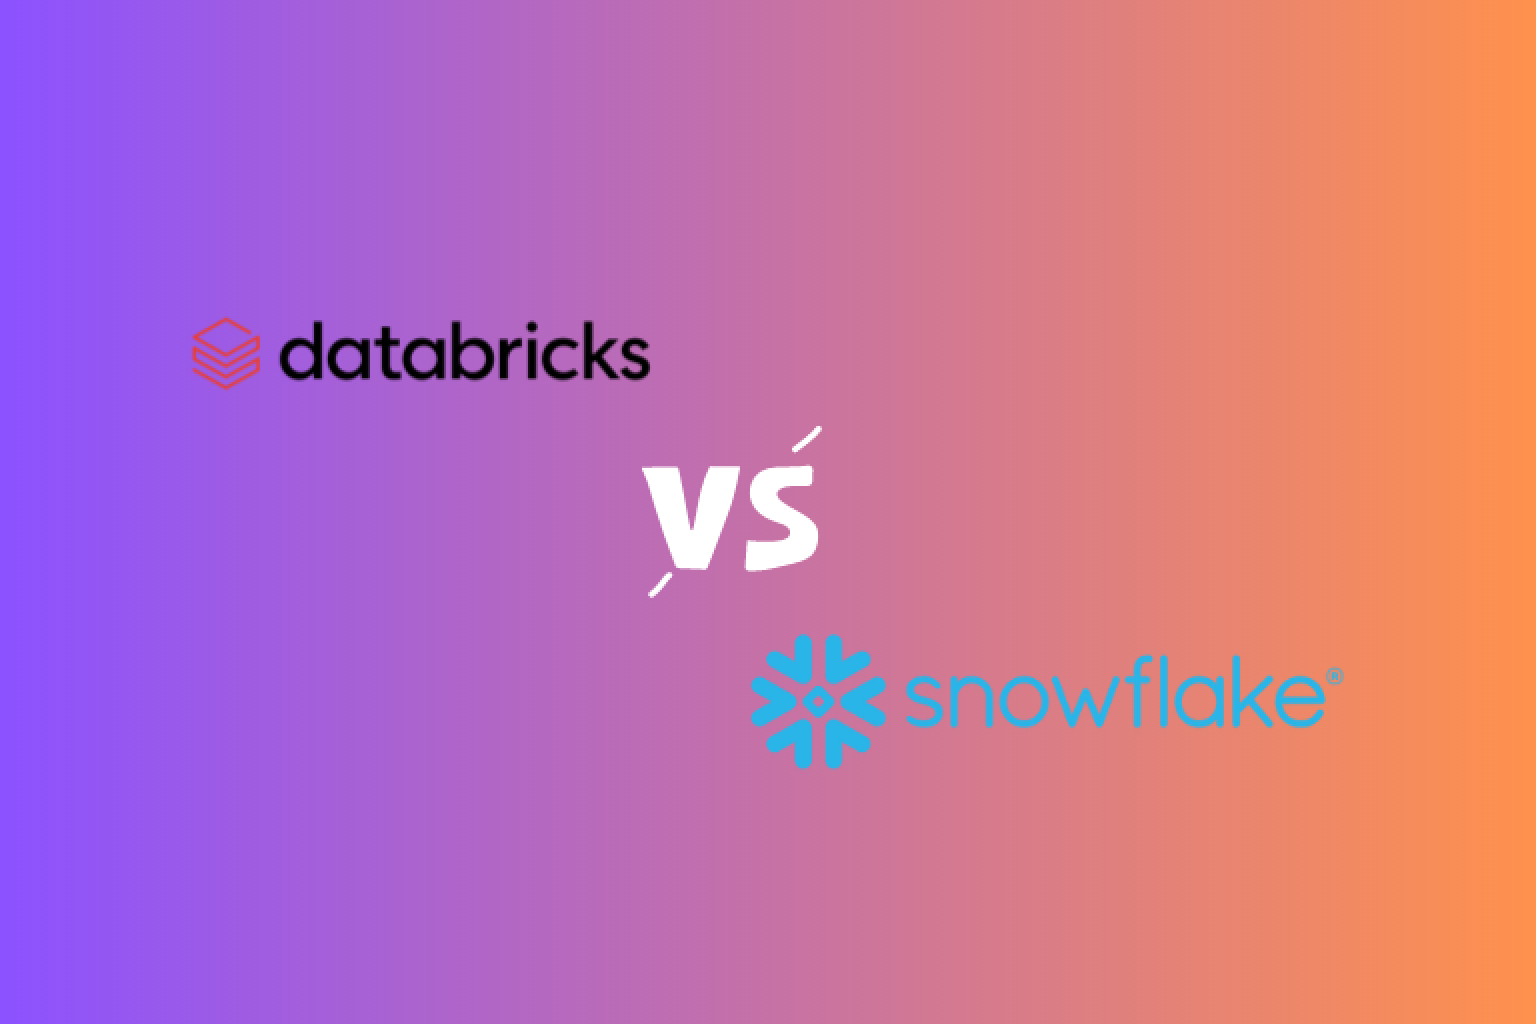 Descubra as principais diferenças entre Databricks e Snowflake, duas plataformas de dados líderes. Saiba mais sobre seus benefícios, desvantagens e descubra qual é a melhor opção para suas necessidades.